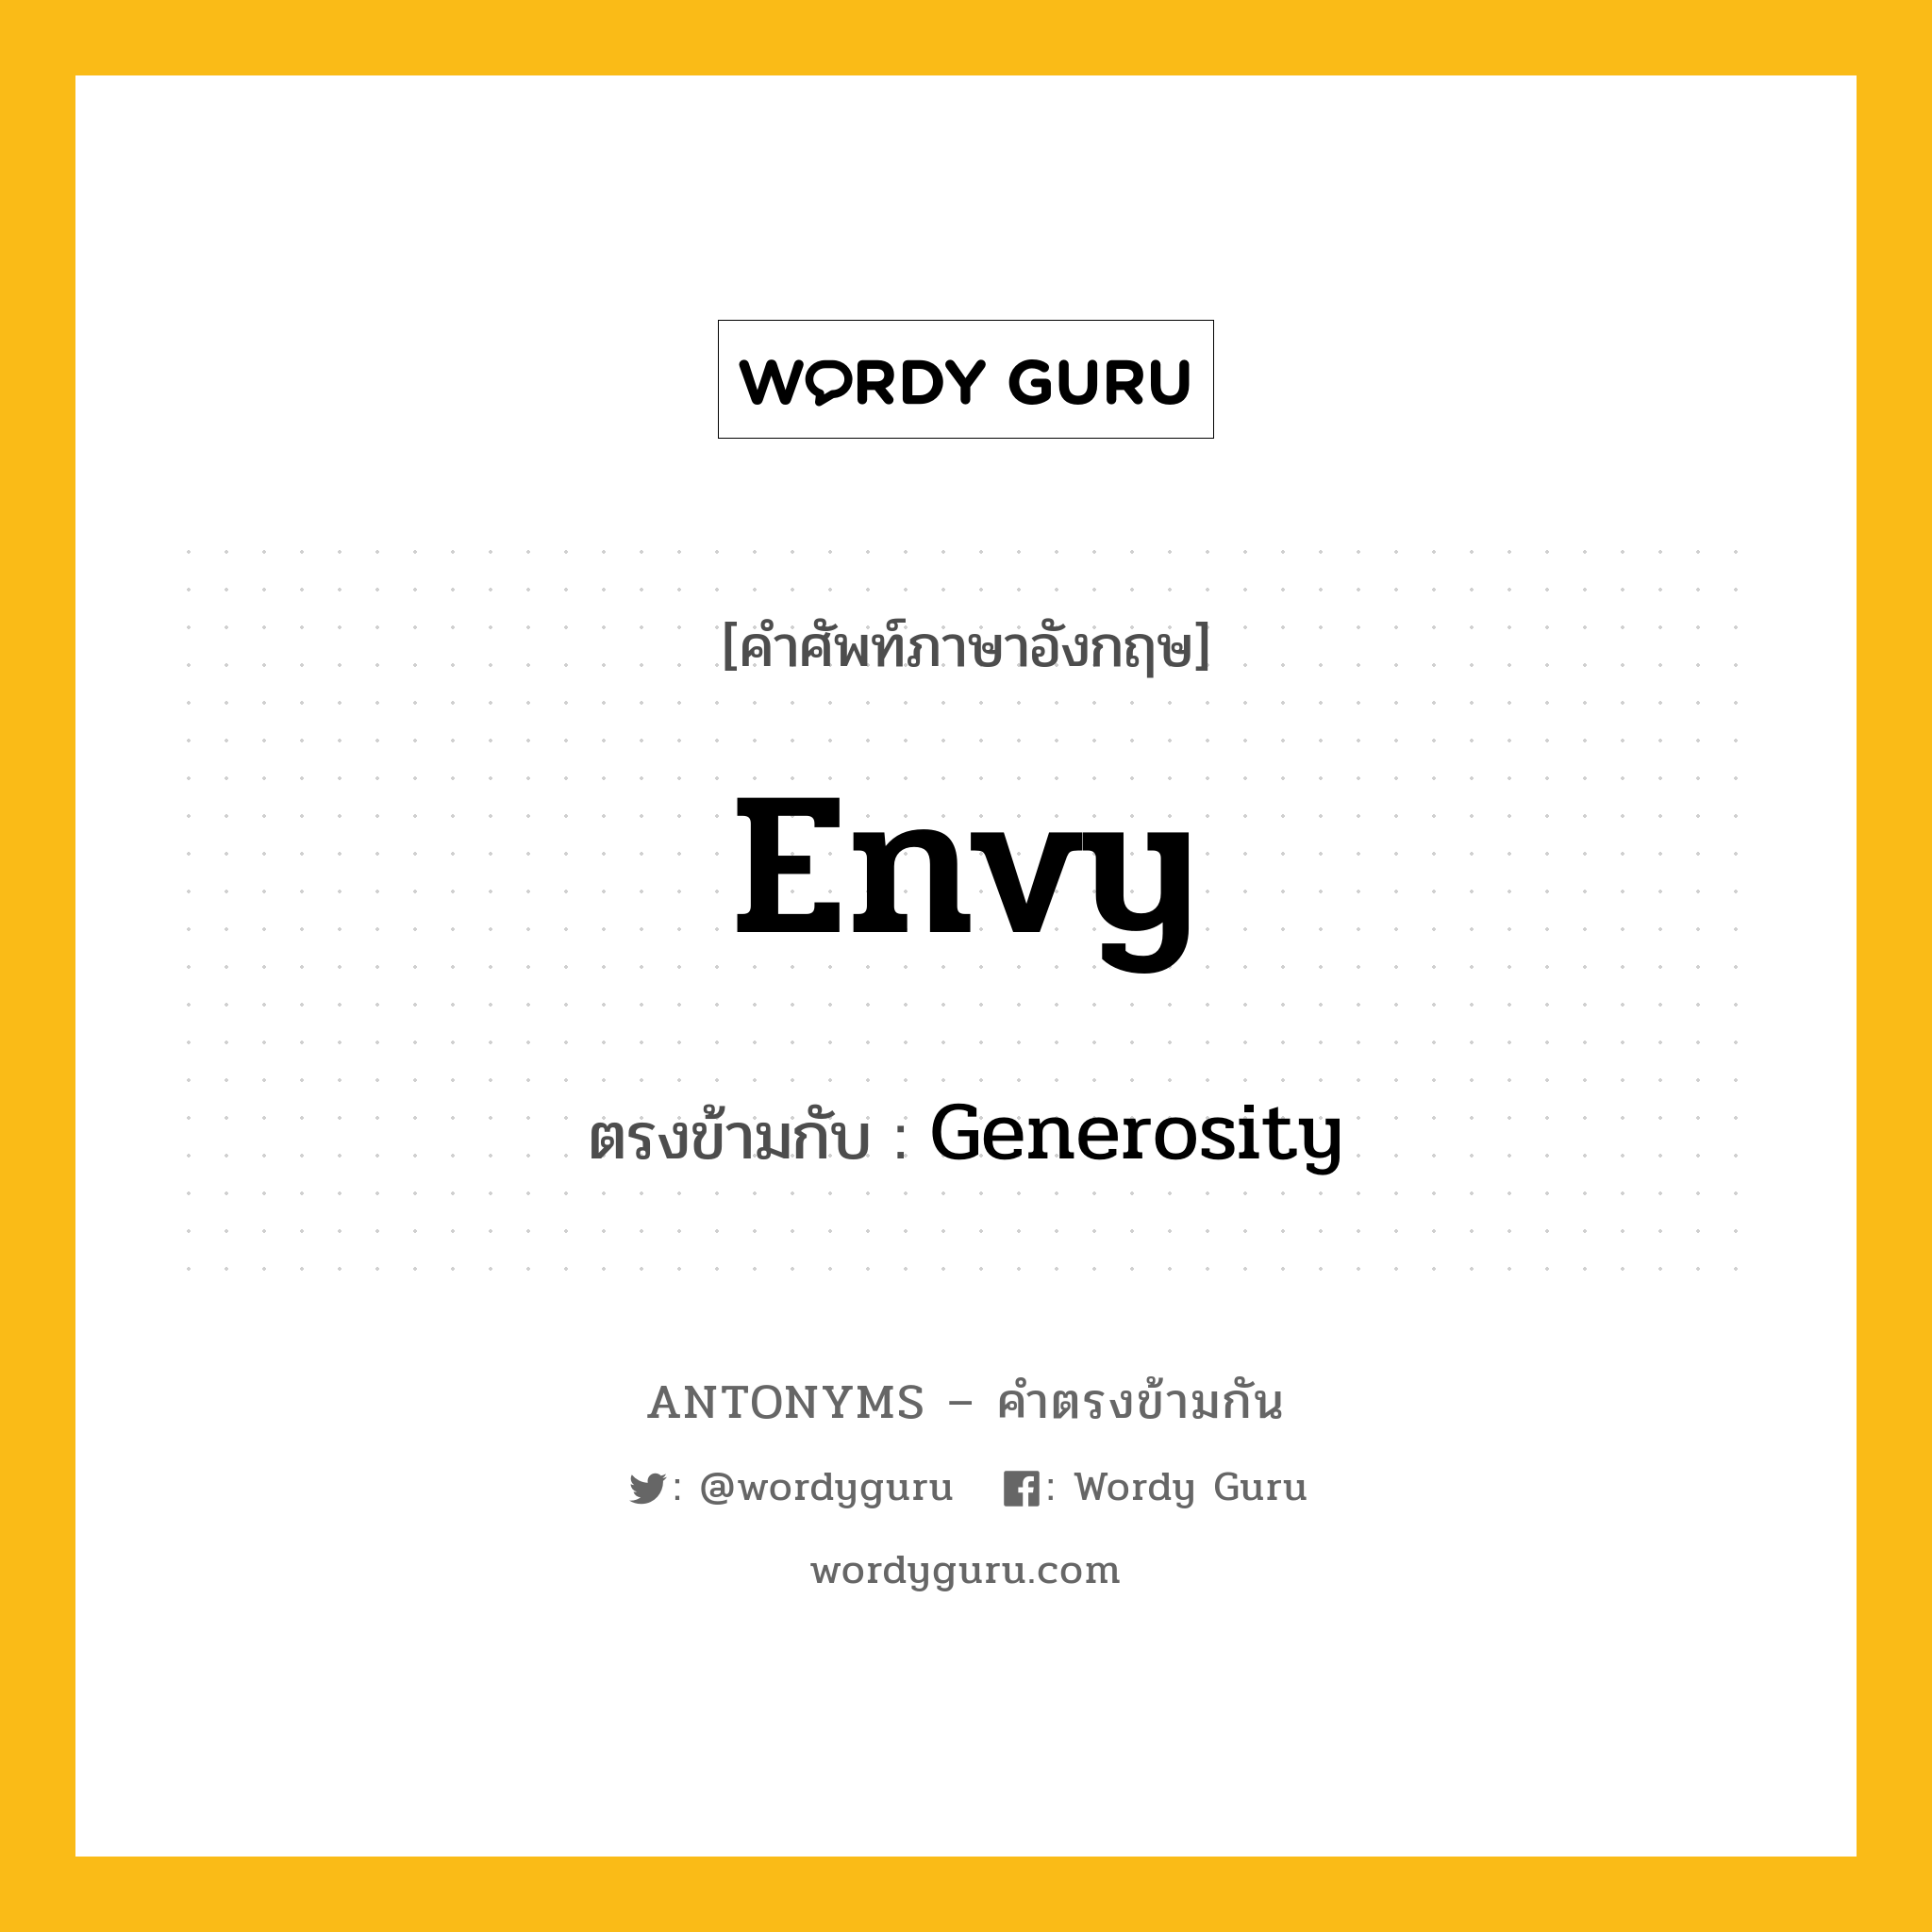 envy เป็นคำตรงข้ามกับคำไหนบ้าง?, คำศัพท์ภาษาอังกฤษ envy ตรงข้ามกับ Generosity หมวด Generosity